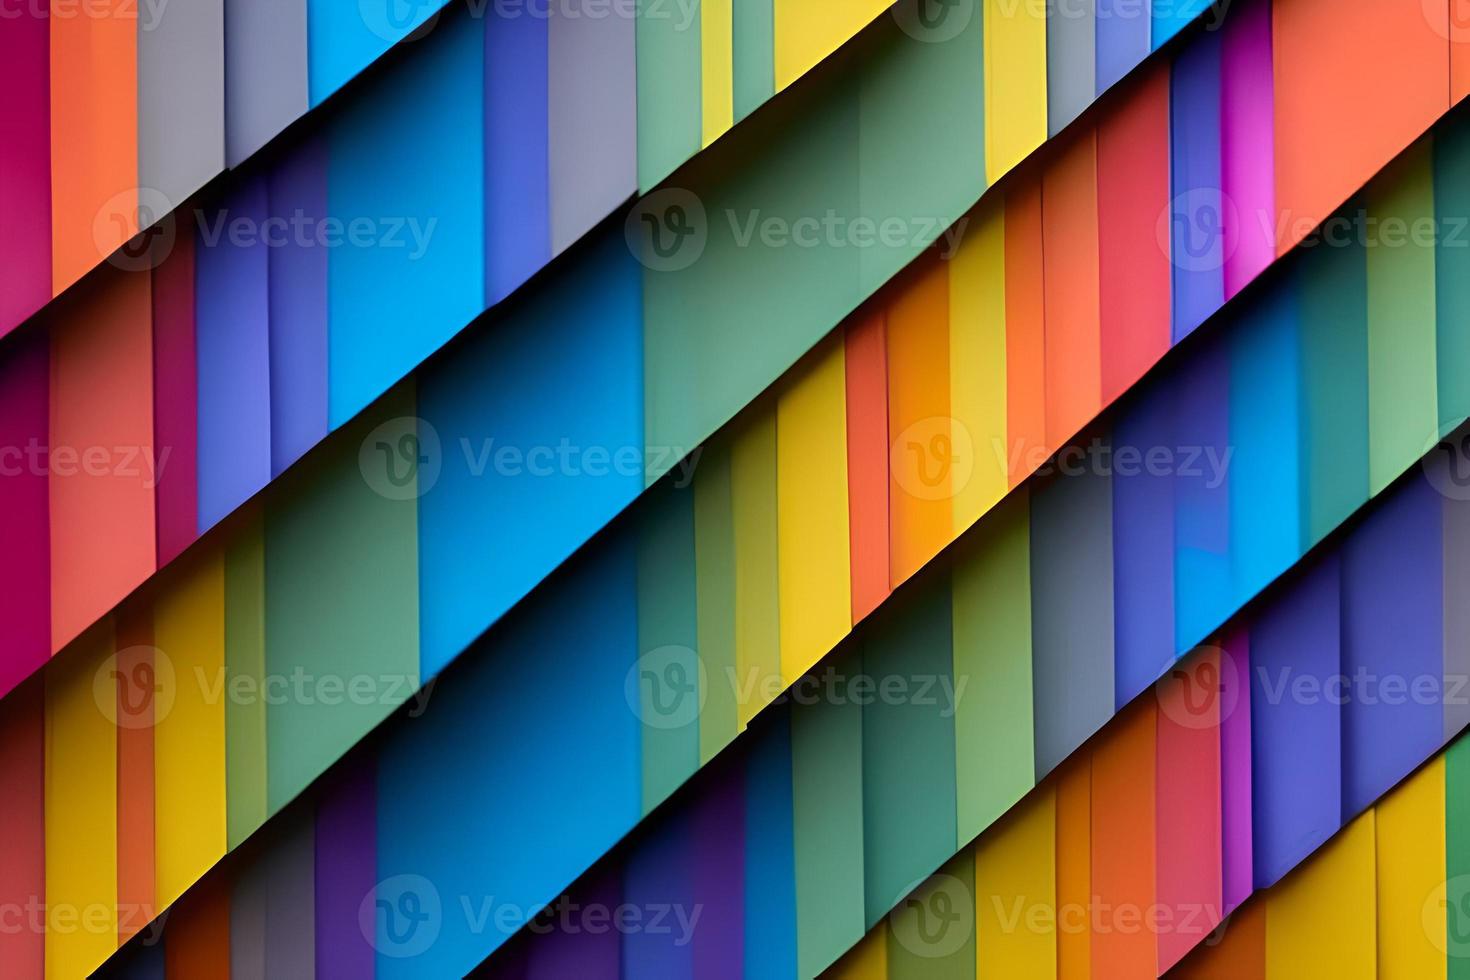 arco Iris colori papel cortar organizar para lindo fundo pano de fundo. papel arte arco Iris papel dobra e cortar fundo com 3d efeito, vibrante cores, vetor ilustração e Projeto material elemento. foto